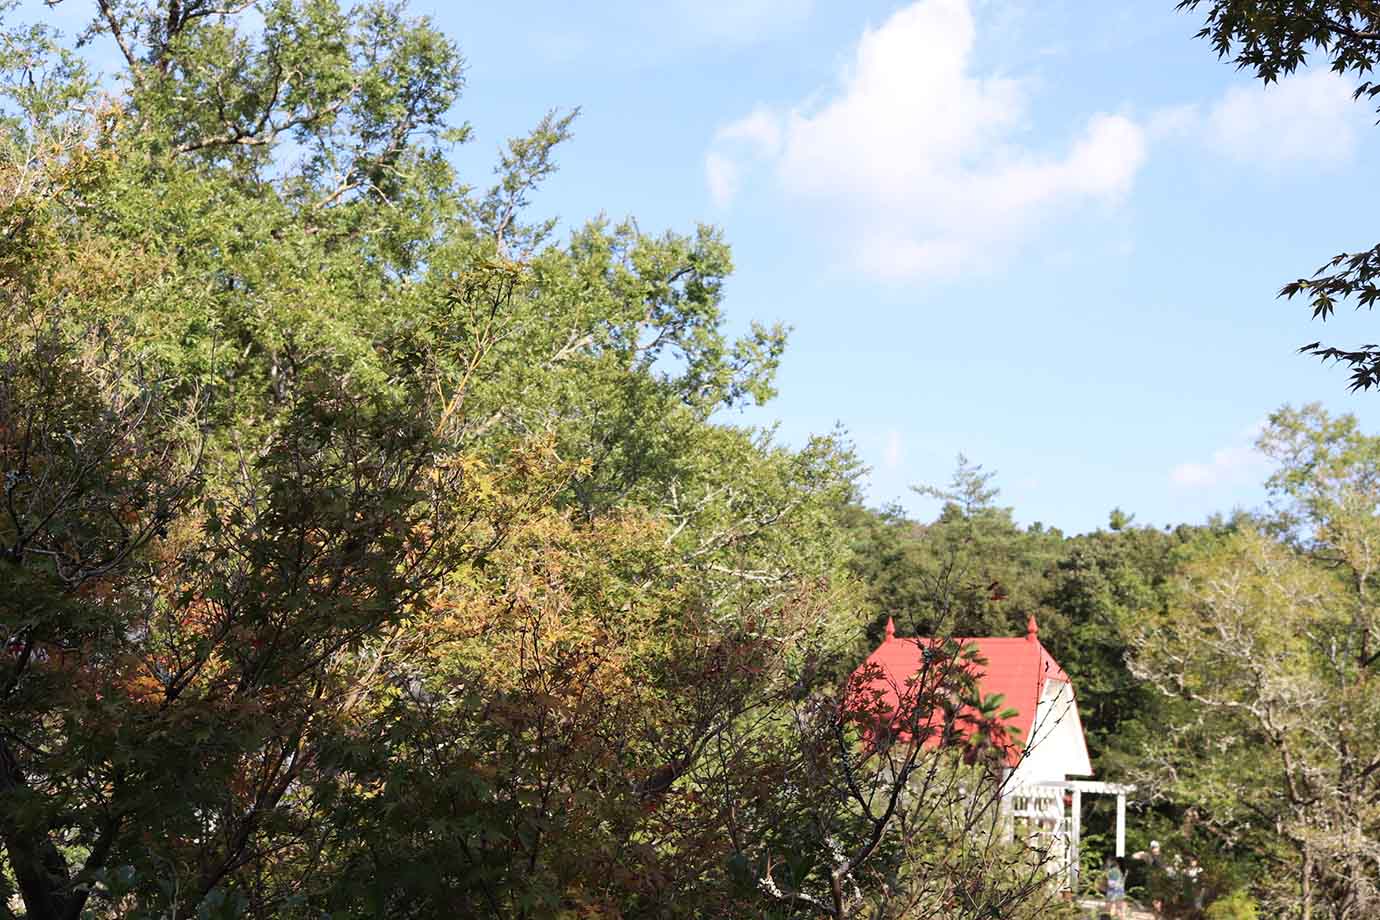 庭園の先にある山道を歩いていくと、「どんどこ森」に到着。ここでは赤い屋根と白い壁が印象的な『となりのトトロ』の「サツキとメイ」の家を、柵の外から眺めることができます。